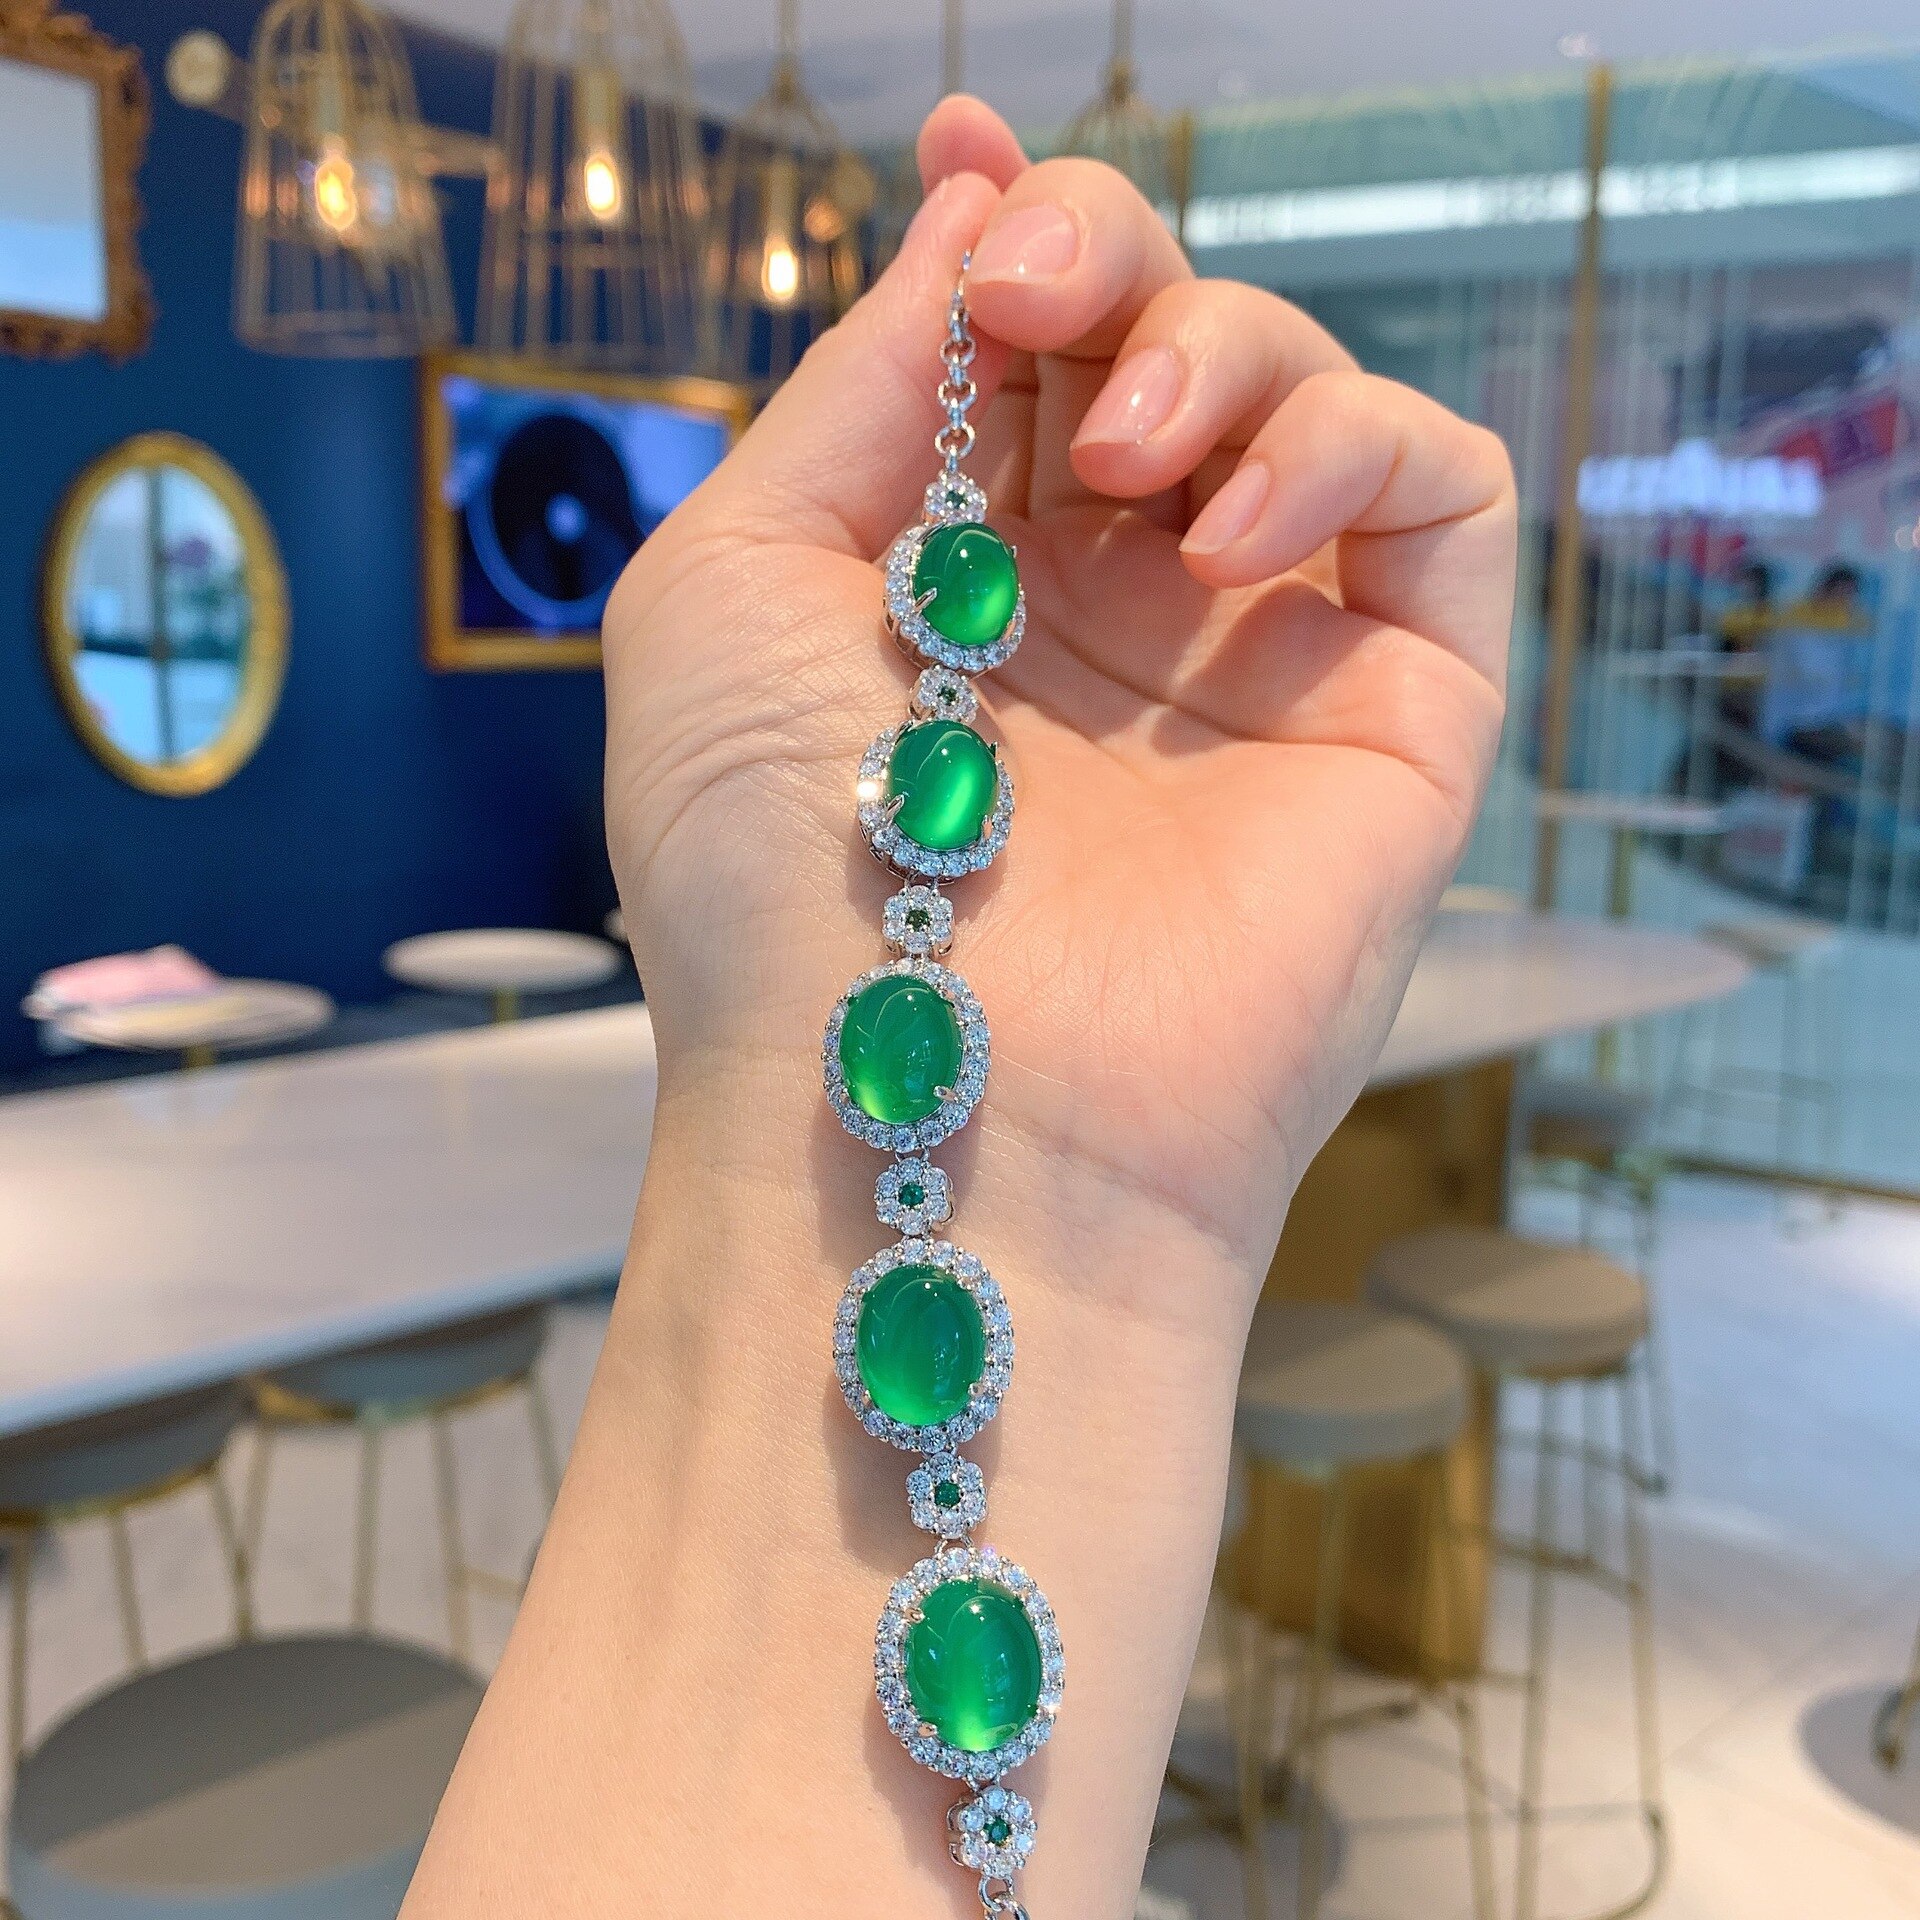 Chalcedony-Emerald-Green-Charm-Evil-Eye-Luxury-925-Sterling-Silver-Bracelet-Party-Jewelry-Women-2022-Cubic.jpg